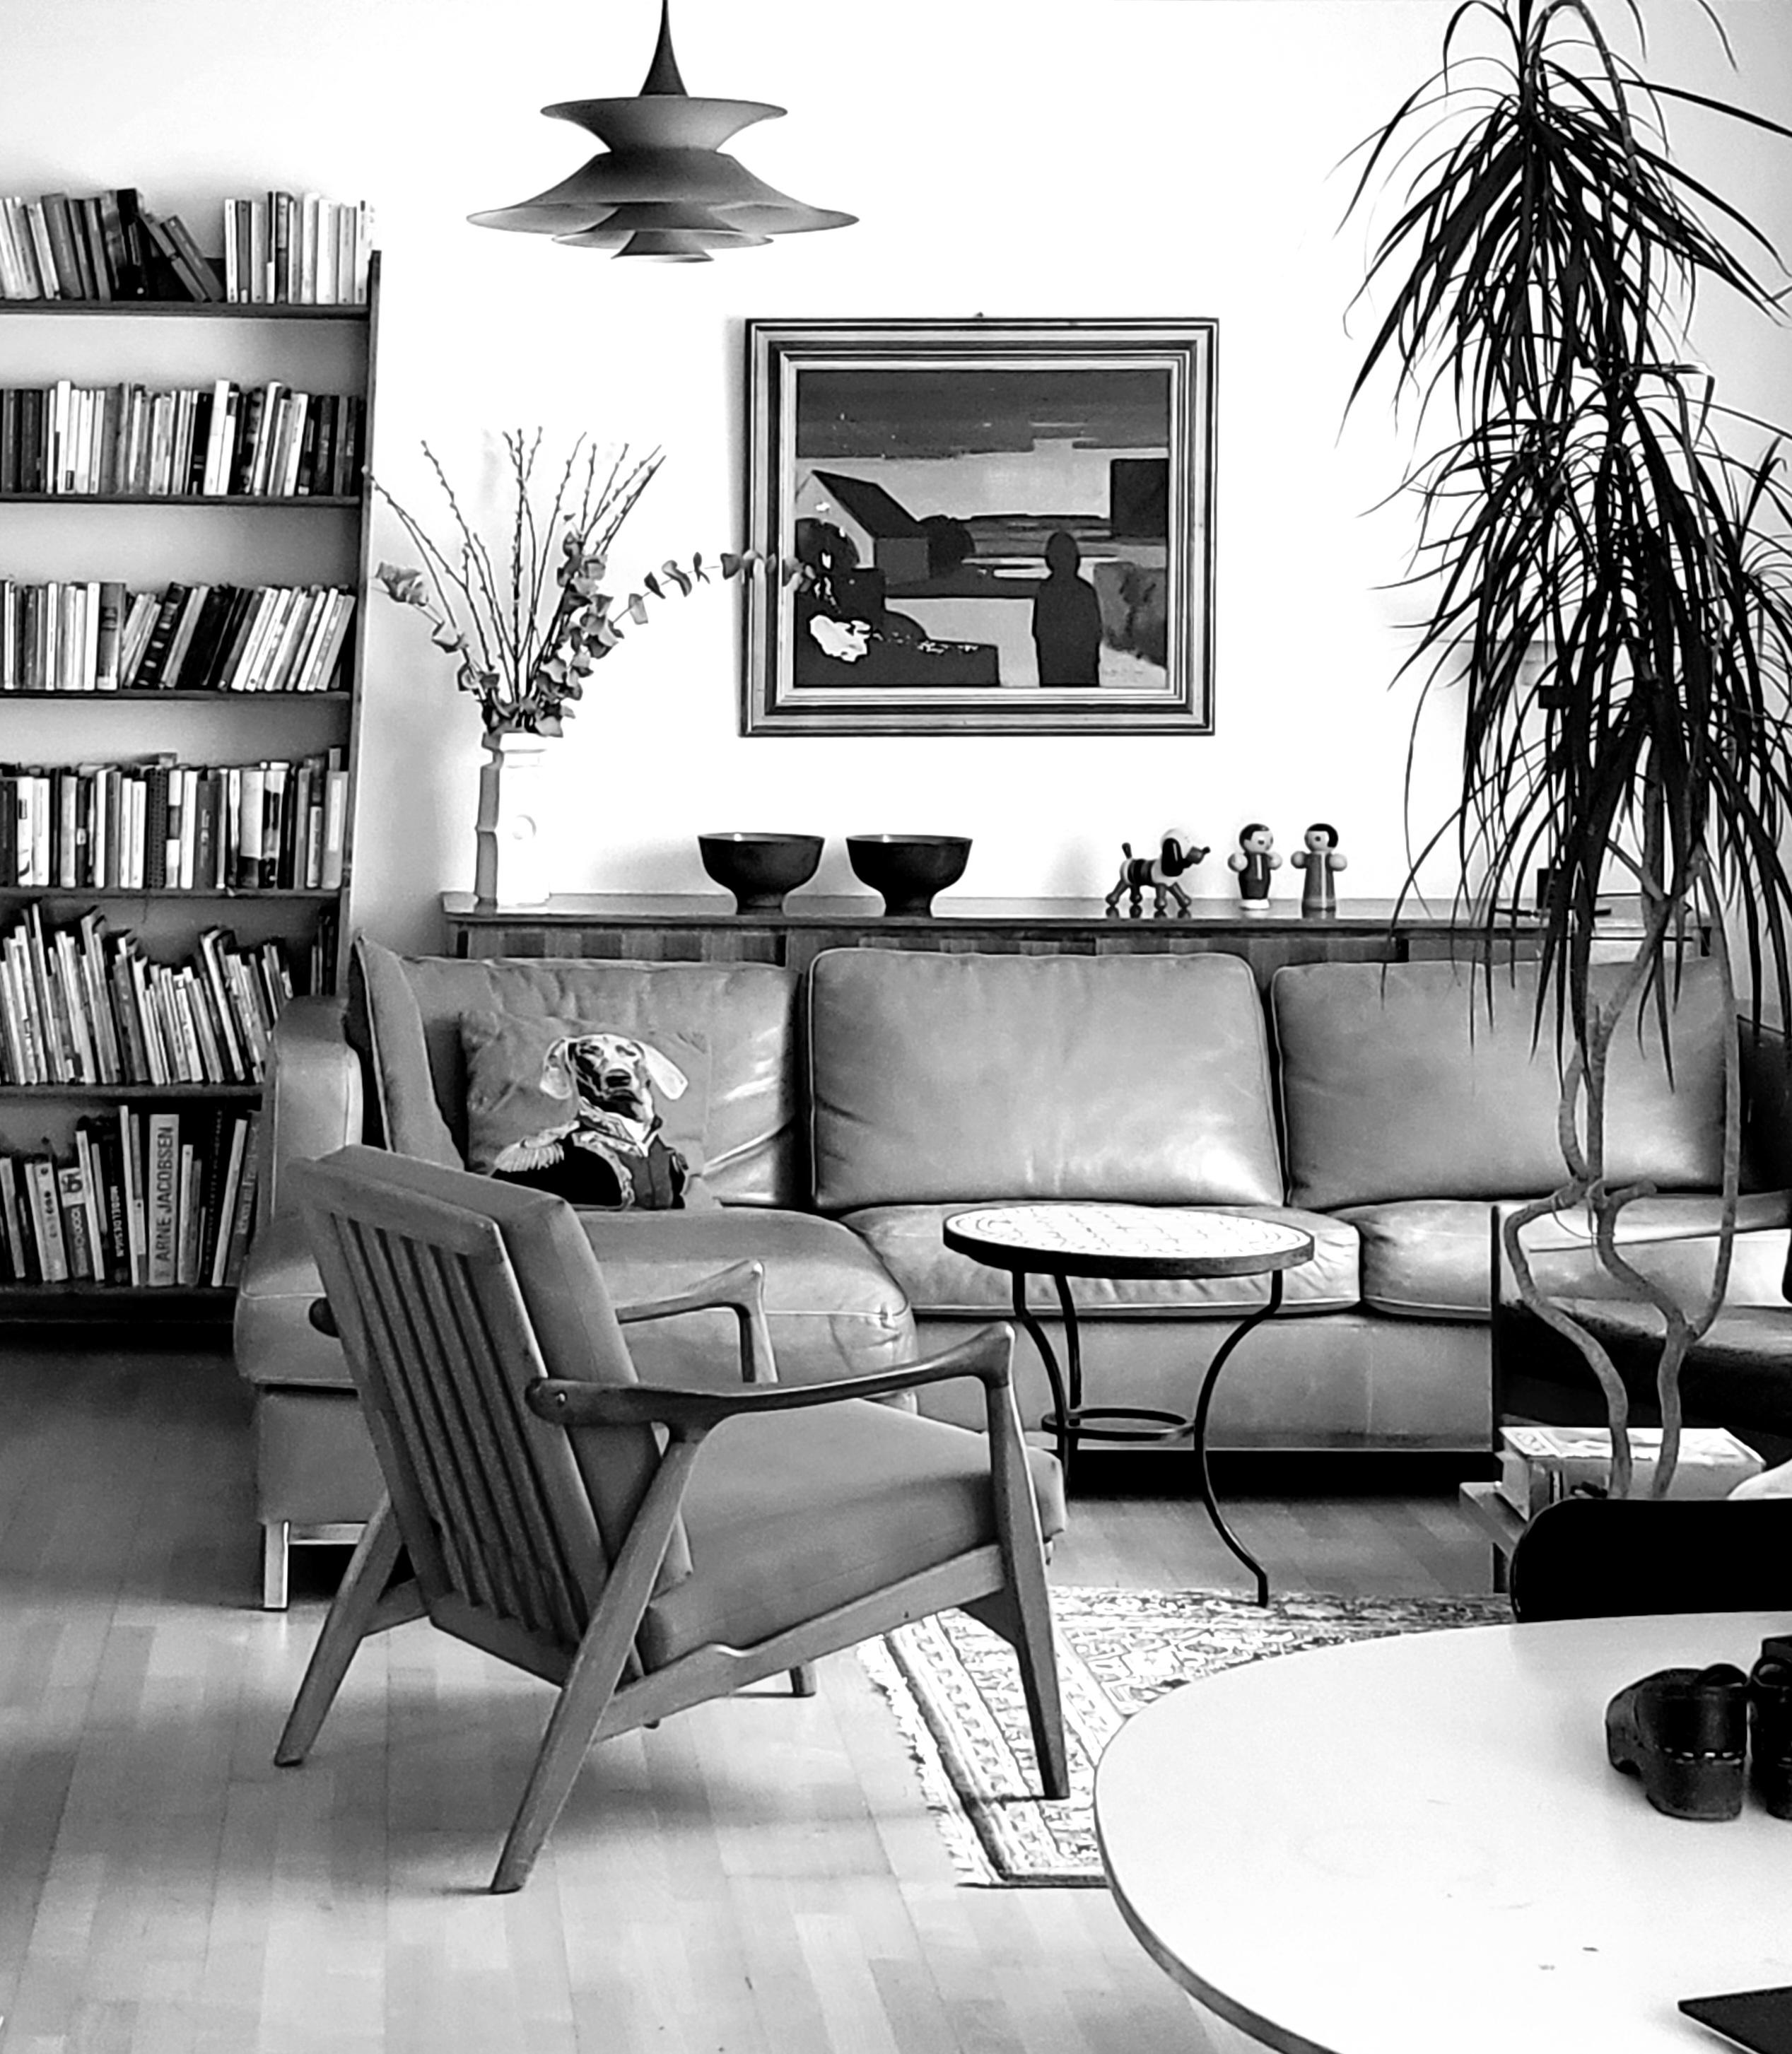 Dänische Deckenleuchte, die in den 1970er Jahren von Erik Balslev für Fog & Morup entworfen wurde. Der zweifarbige gebrannte orange und braune Lack verleiht jedem Raum einen Hauch von Raffinesse. Das weiße Kabel verstärkt seine elegante